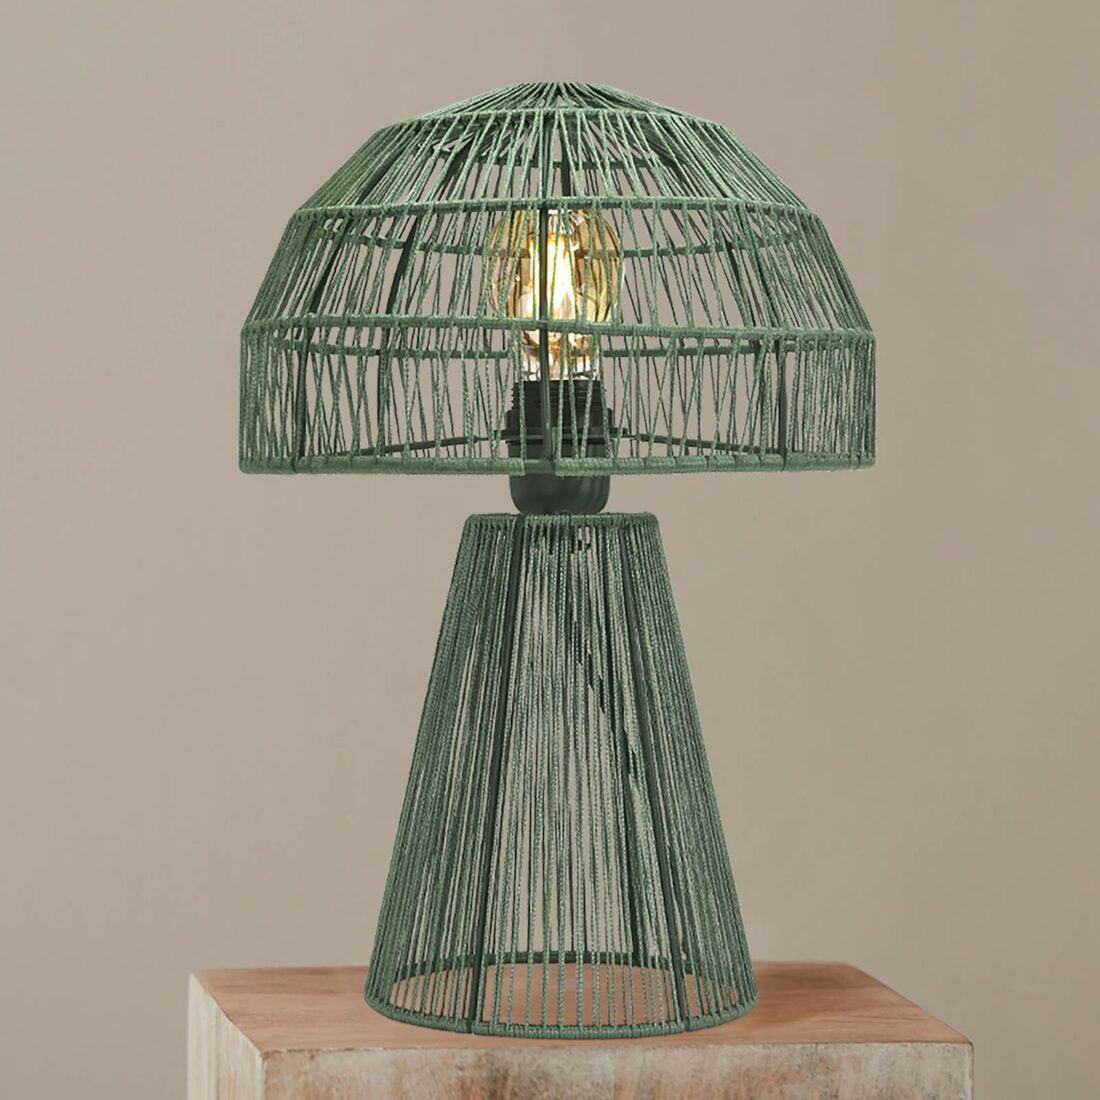 PR Home Porcini stolní lampa výška 37 cm zelená